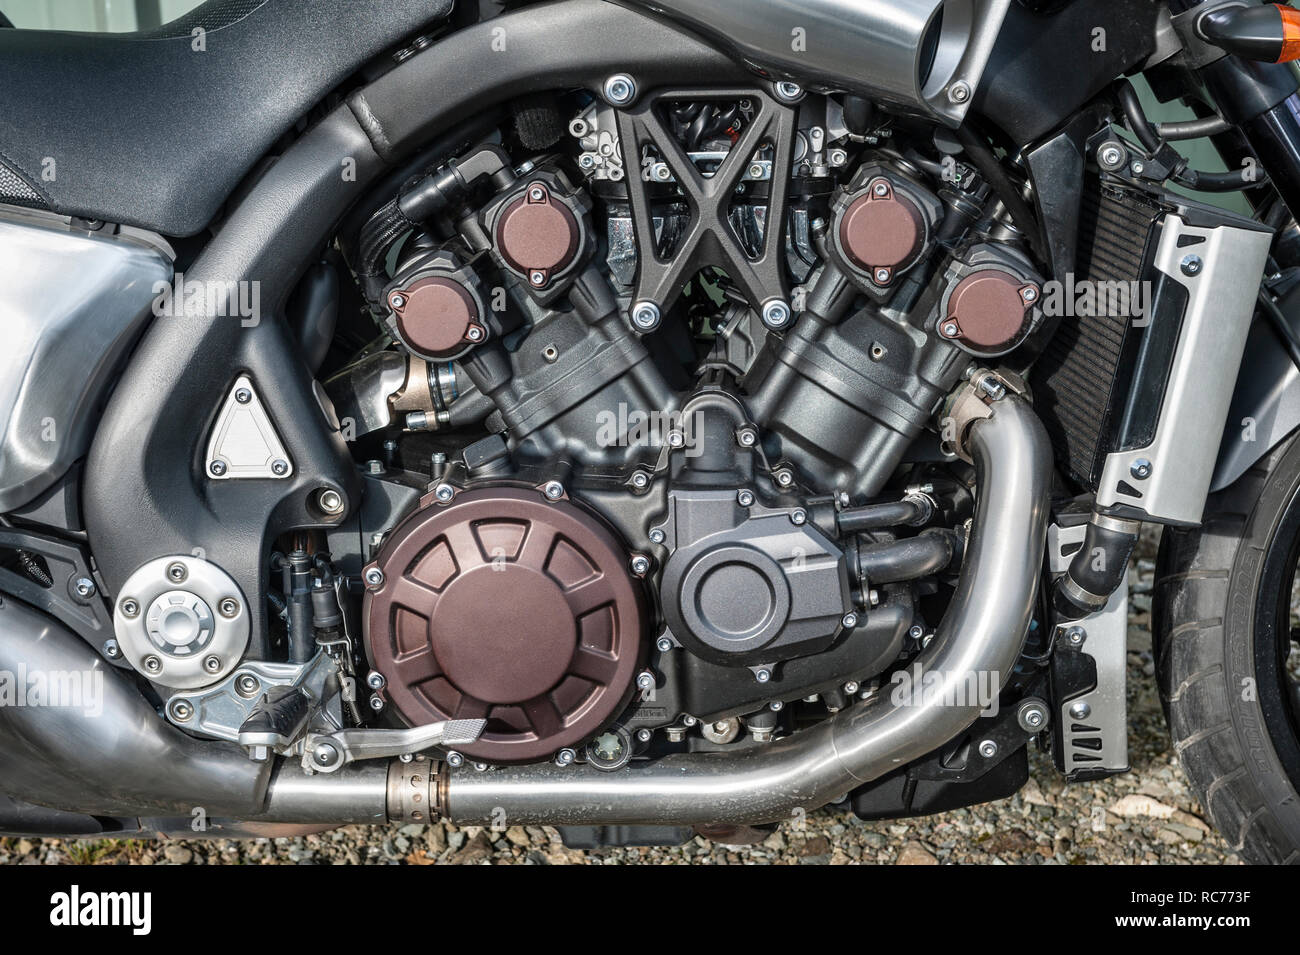 UK. Moto Yamaha VMAX, avec un 4 cylindres de 1679cc à refroidissement liquide moteur V4, gros plan Banque D'Images